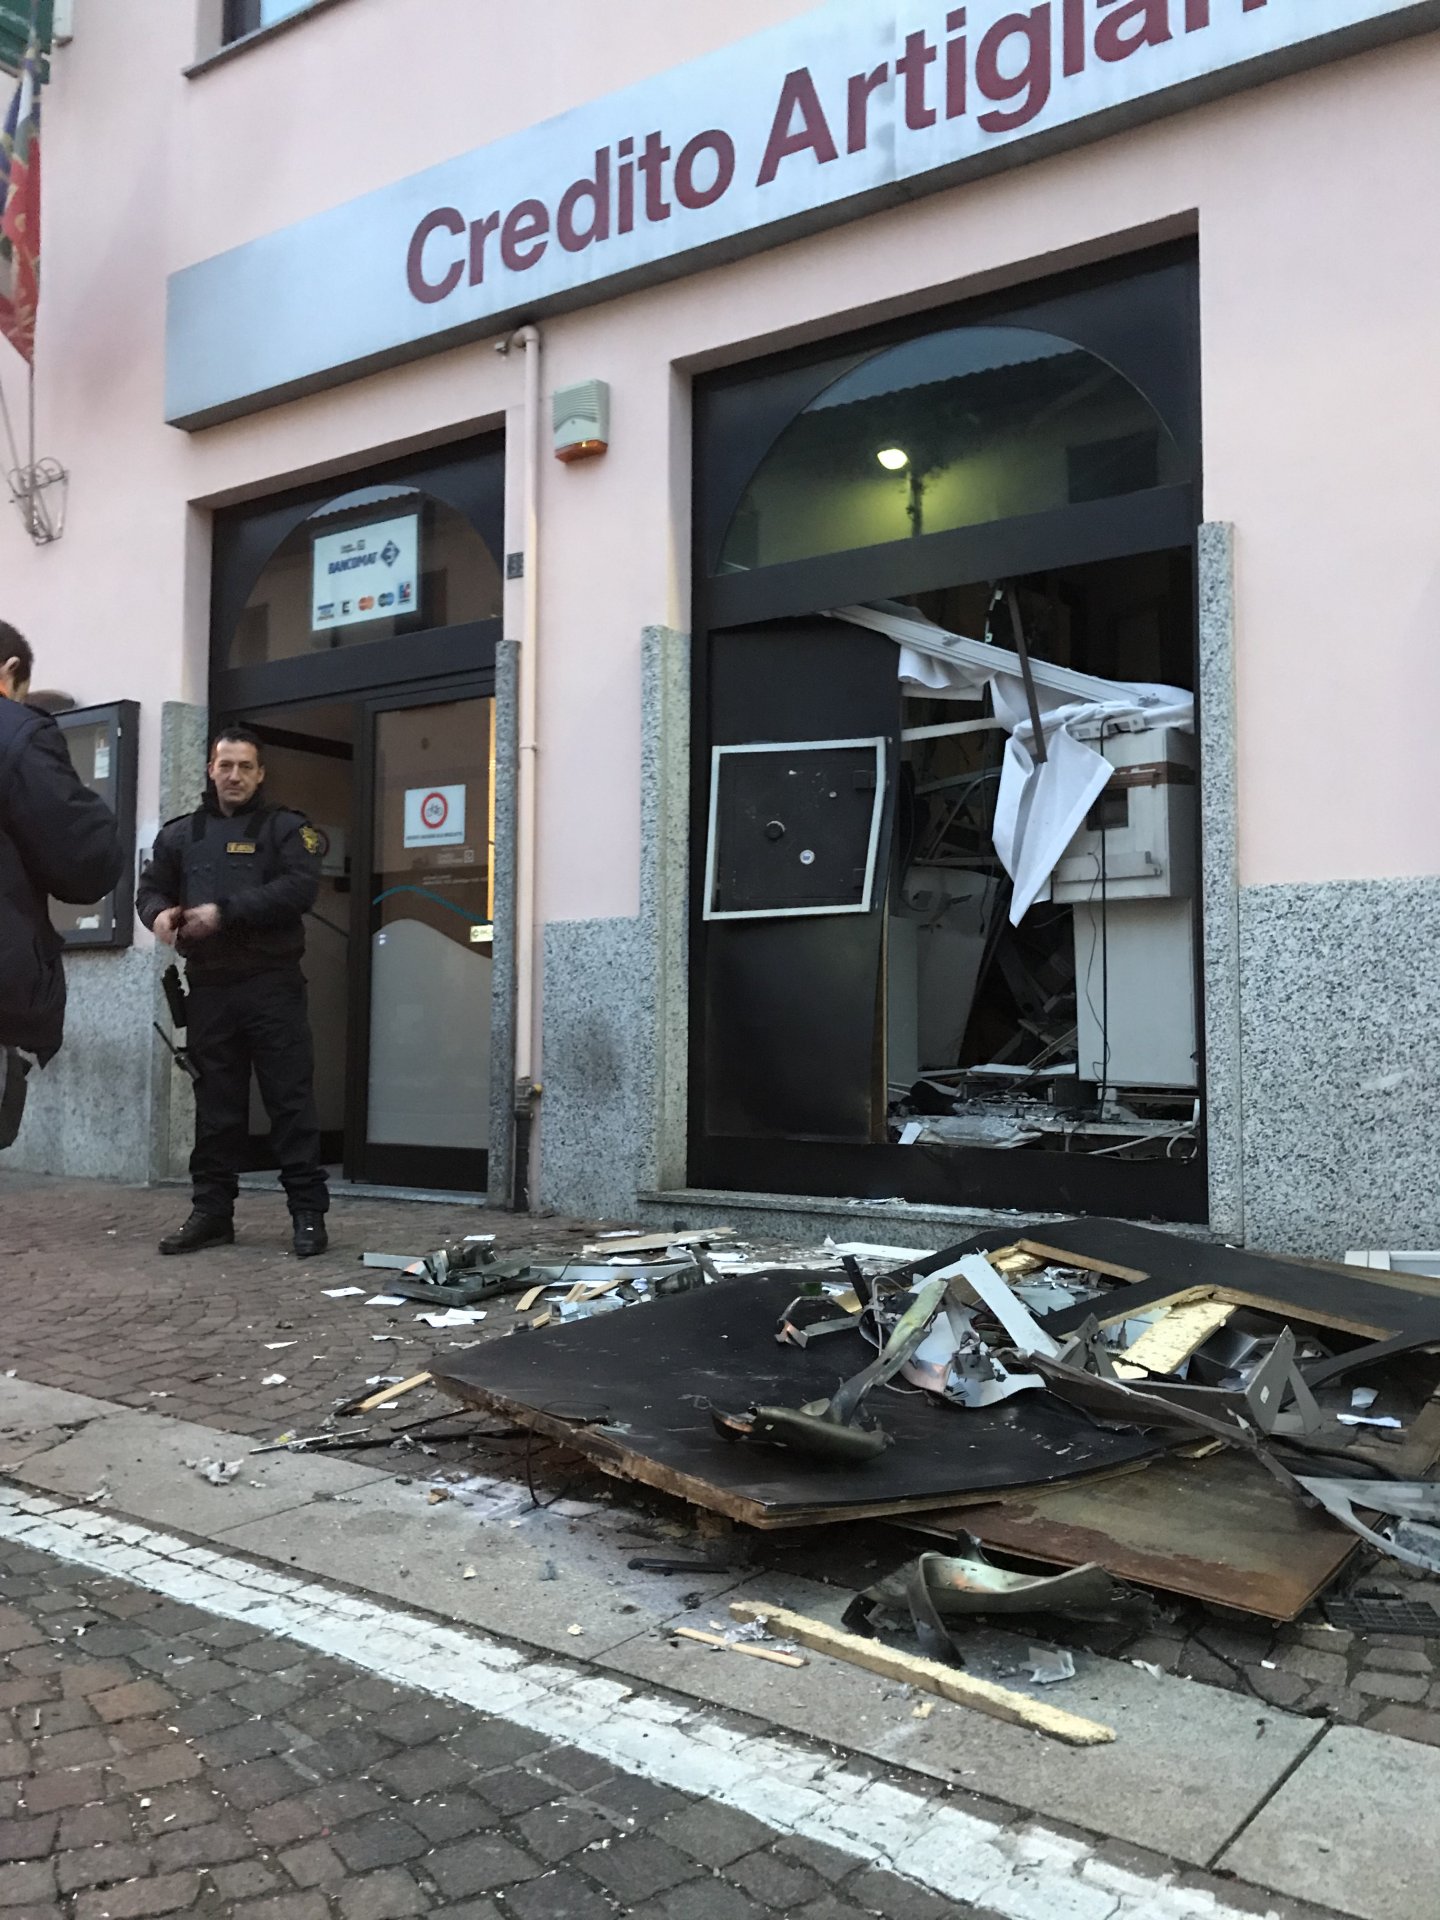 Caponago via Roma Credito Artigiano ladri fanno esplodere il bancomat